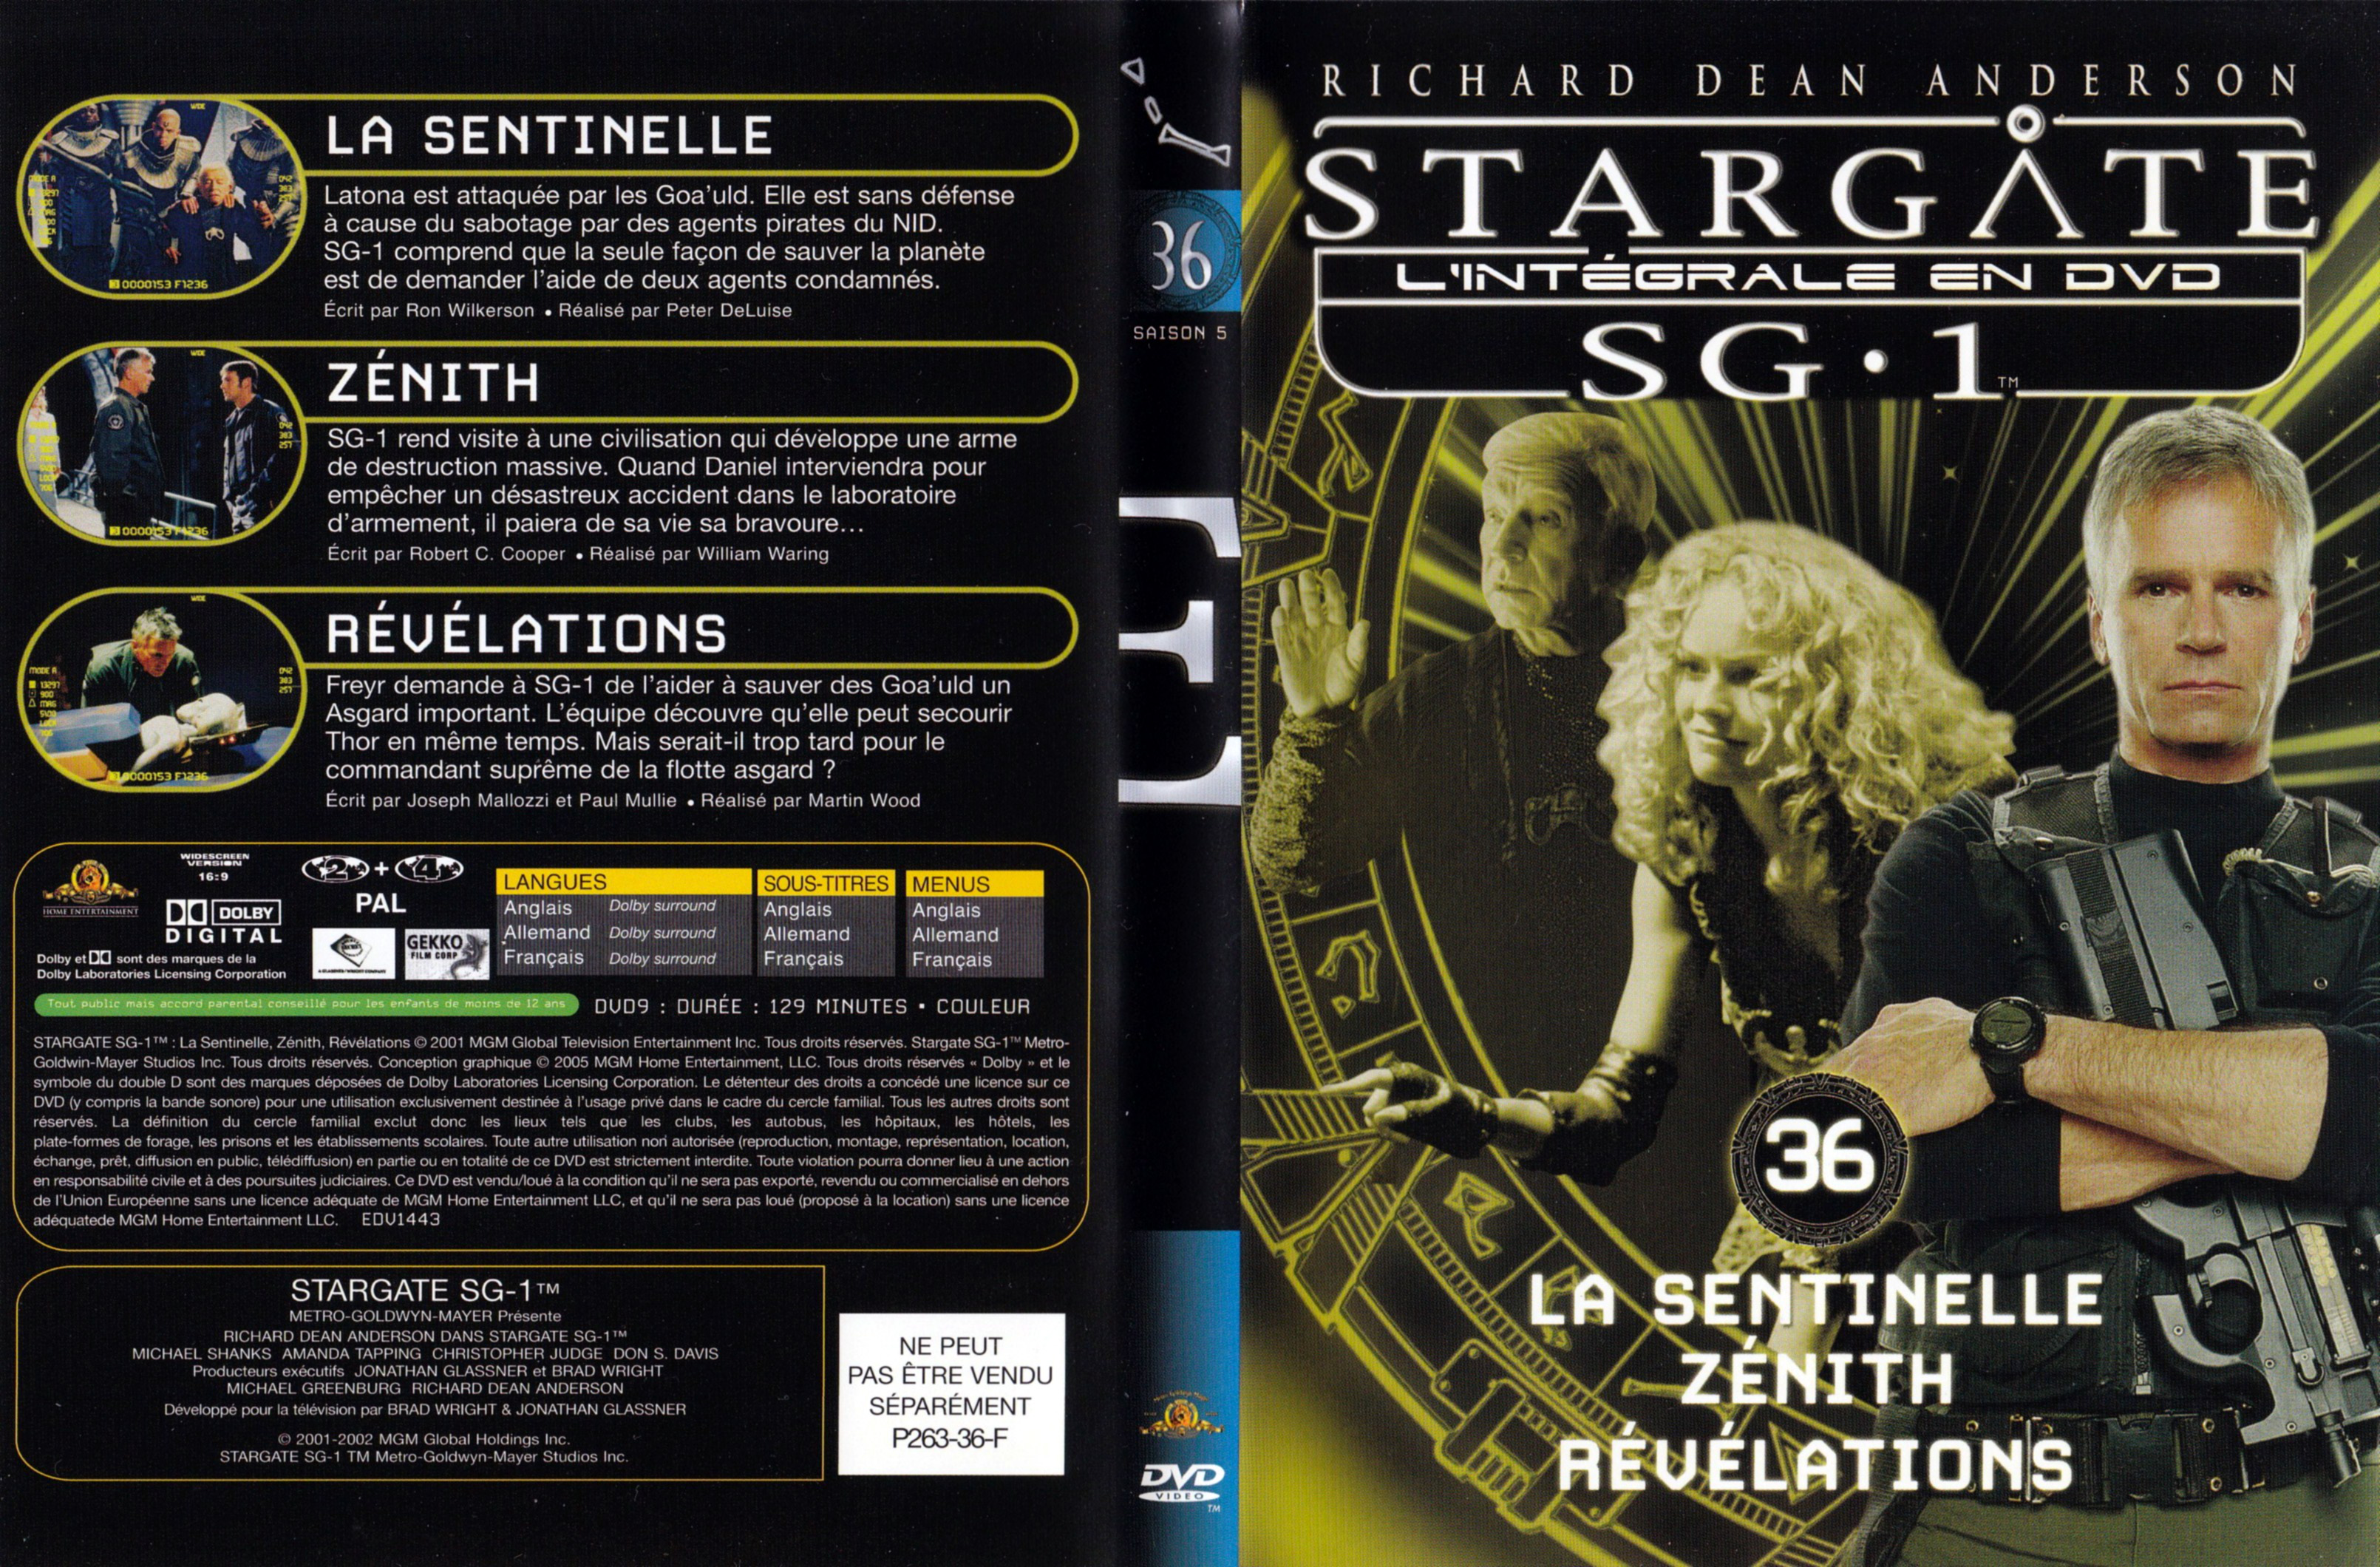 Jaquette DVD Stargate SG1 Intgrale Saison 5 vol 36